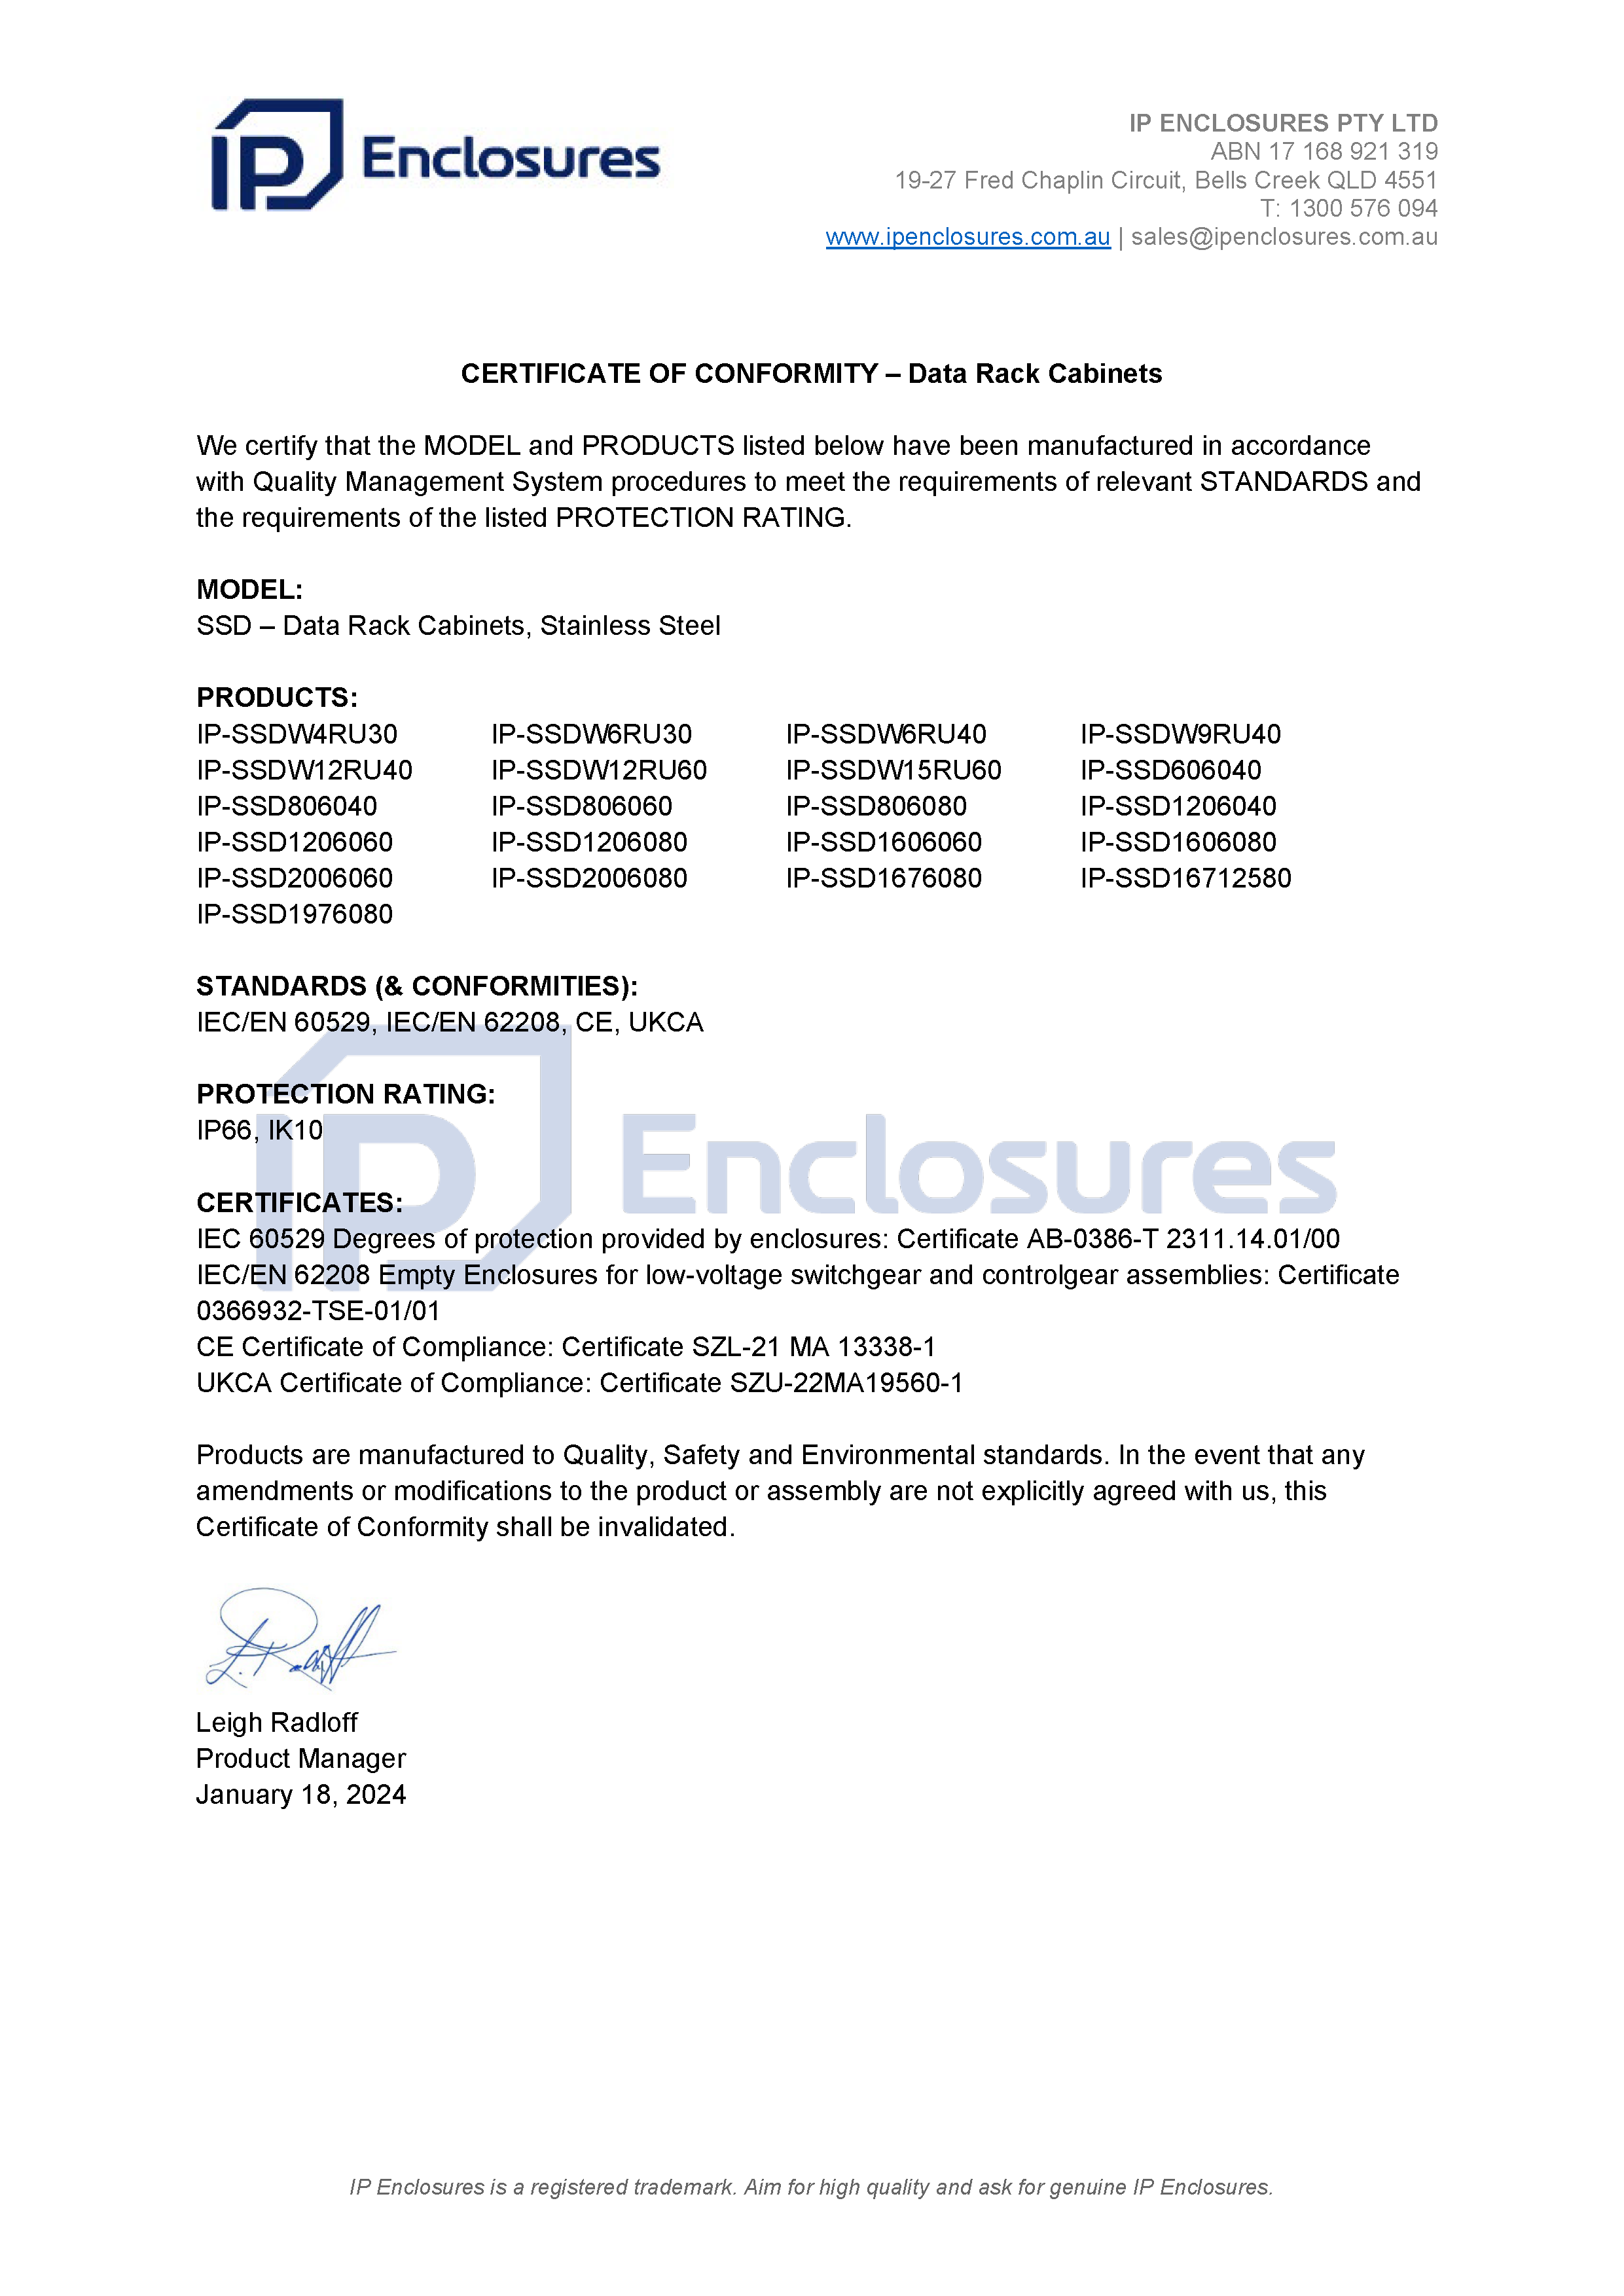 IP Enclosures Test Report - TS EN 60529 IP55 Floor Standing Cabinets